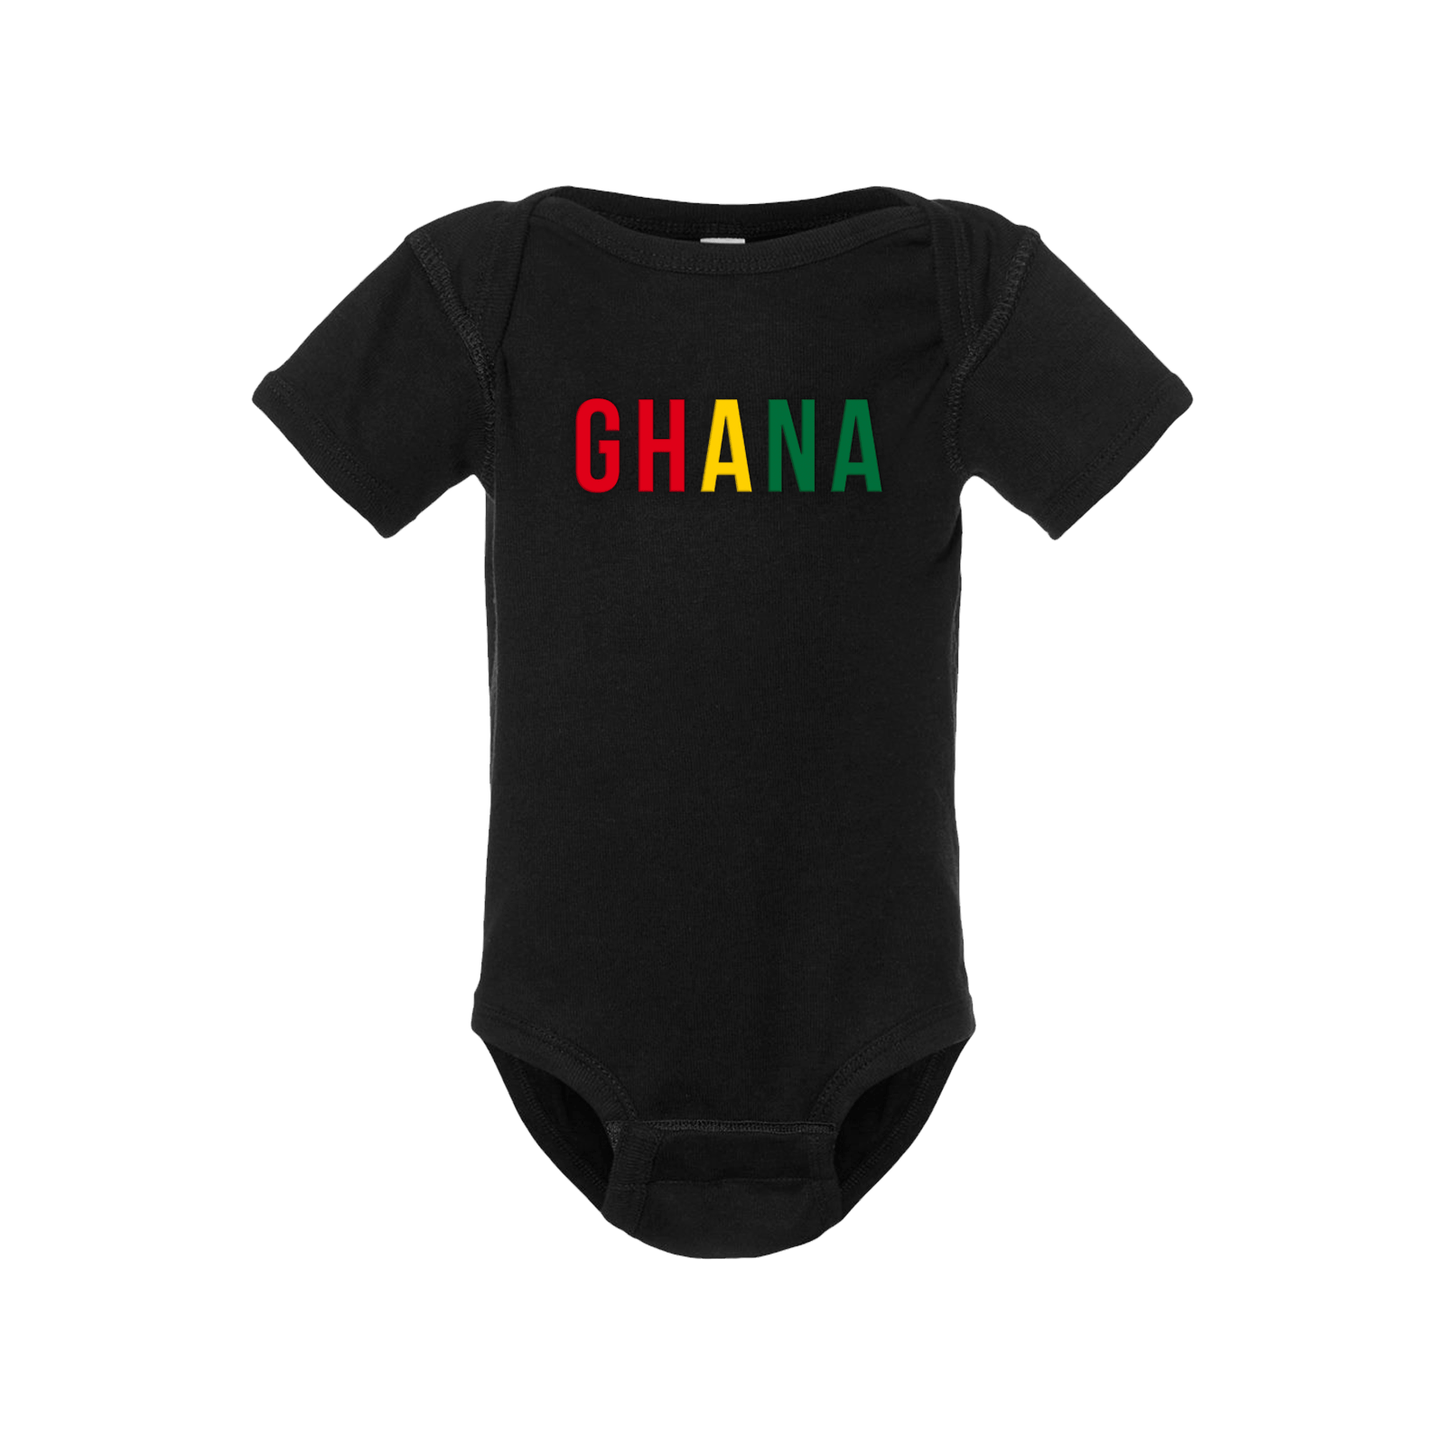 Ghana Short Sleeve Onesie - Babies & Toddlers